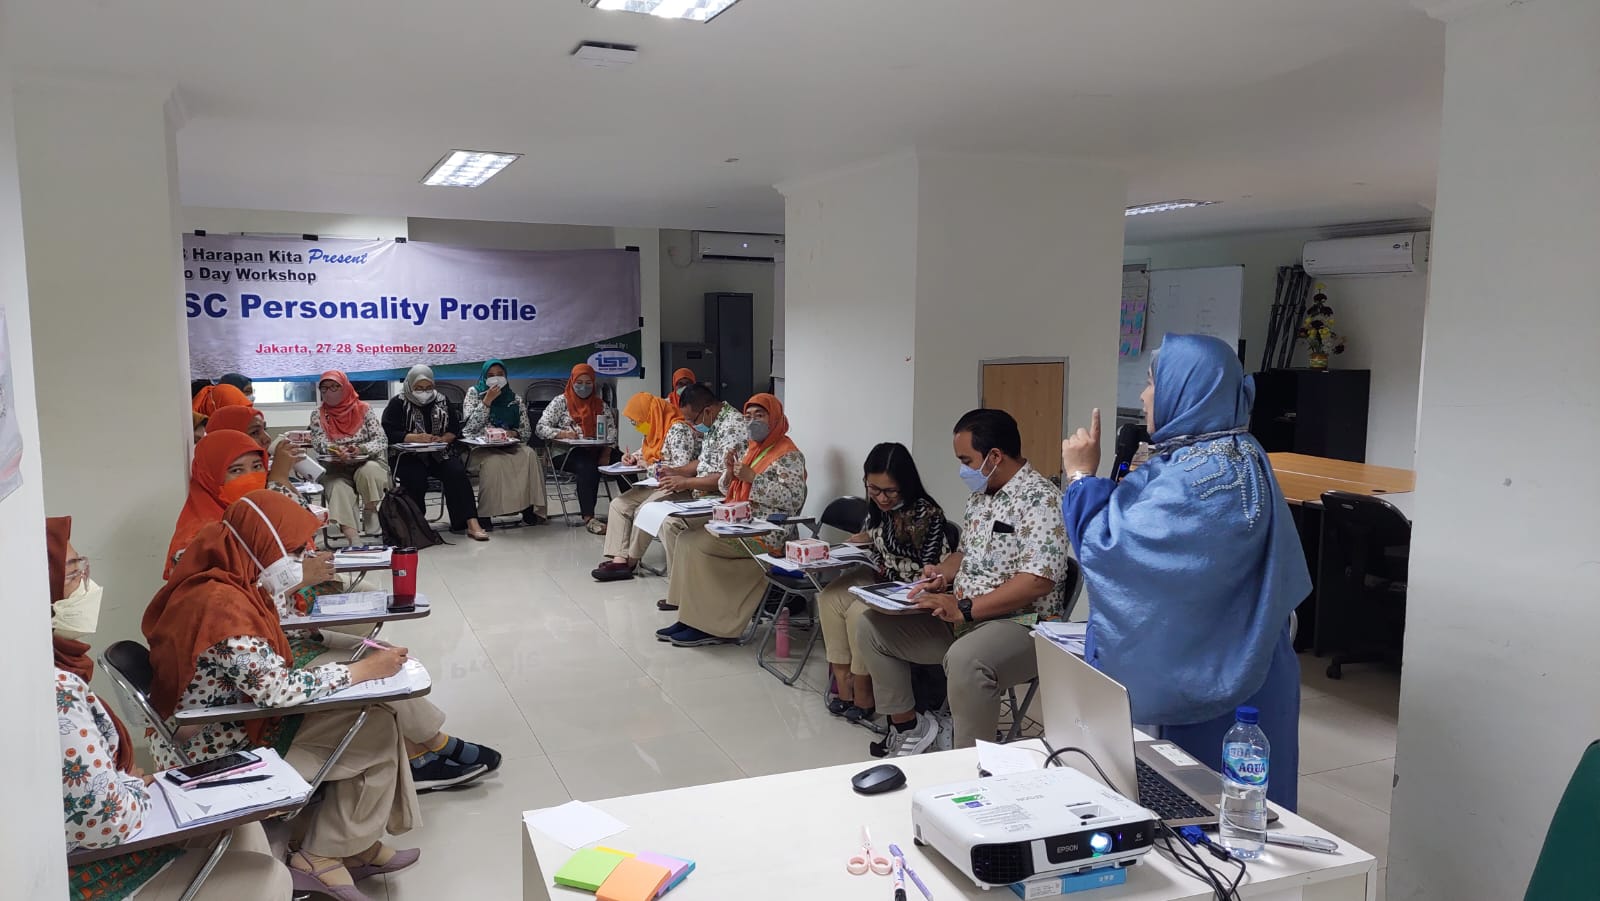 Jasa Konsultan HRD Berkualitas  Melayani Wilayah Padang Hub 6281386200445